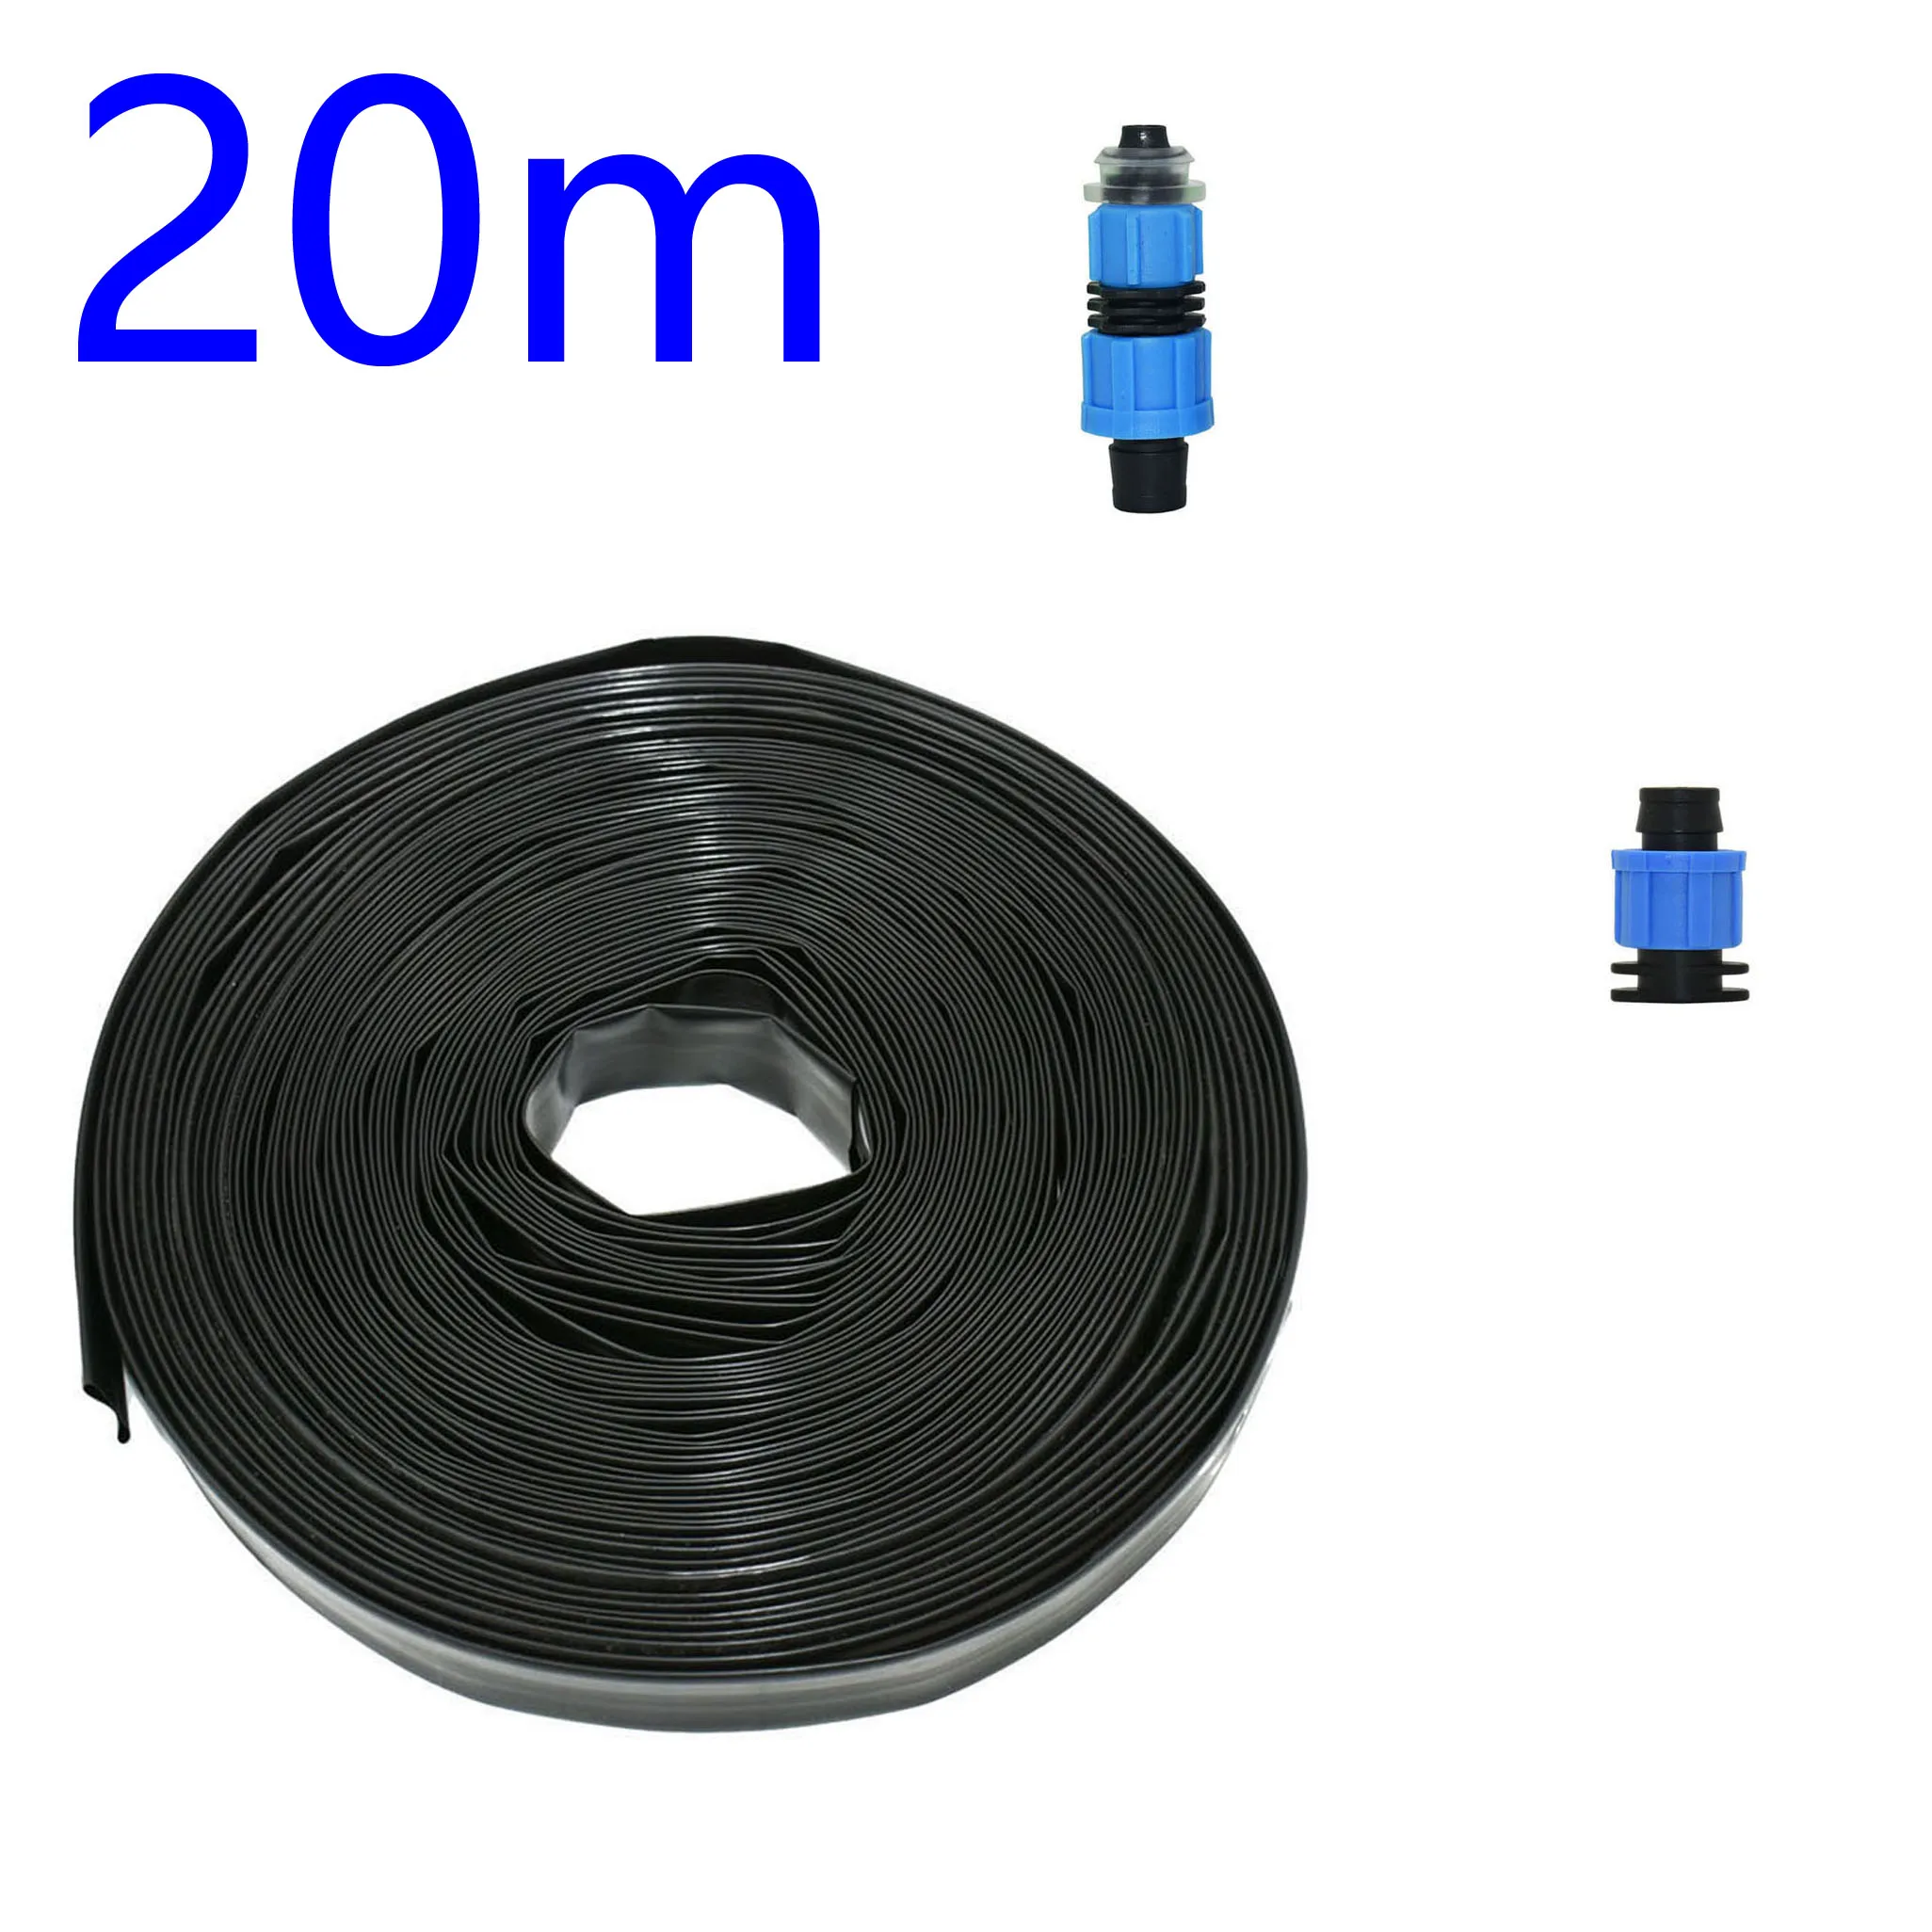 16 мм капельная лента для оросительной системы капельного орошения комплект лента для полива 0,2 мм толщина стенок расстояние 150 мм 300 мм - Цвет: 20m